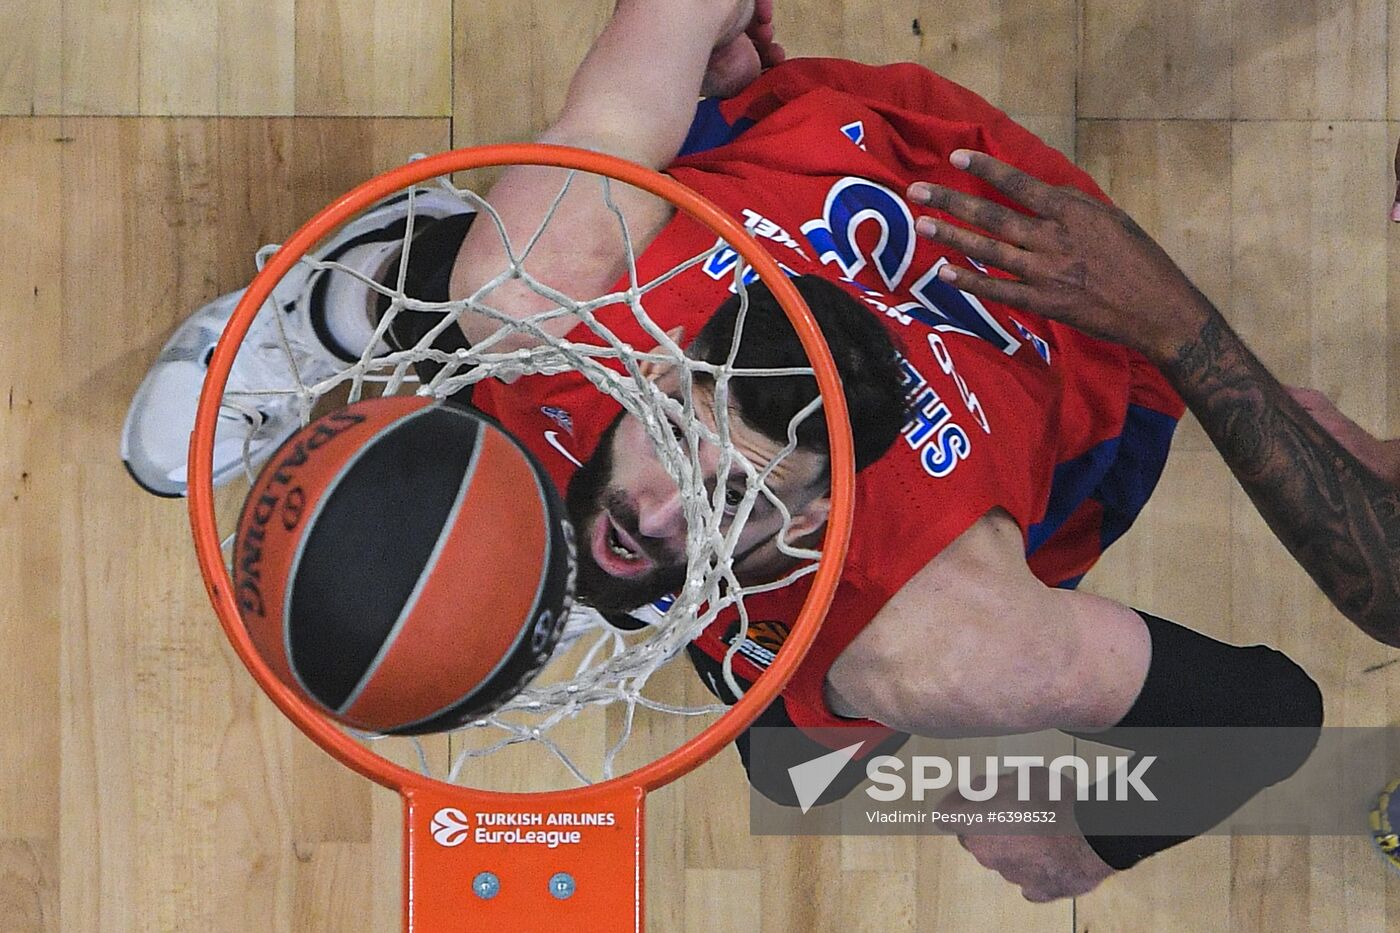 Russia Basketball Euroleague CSKA - Real